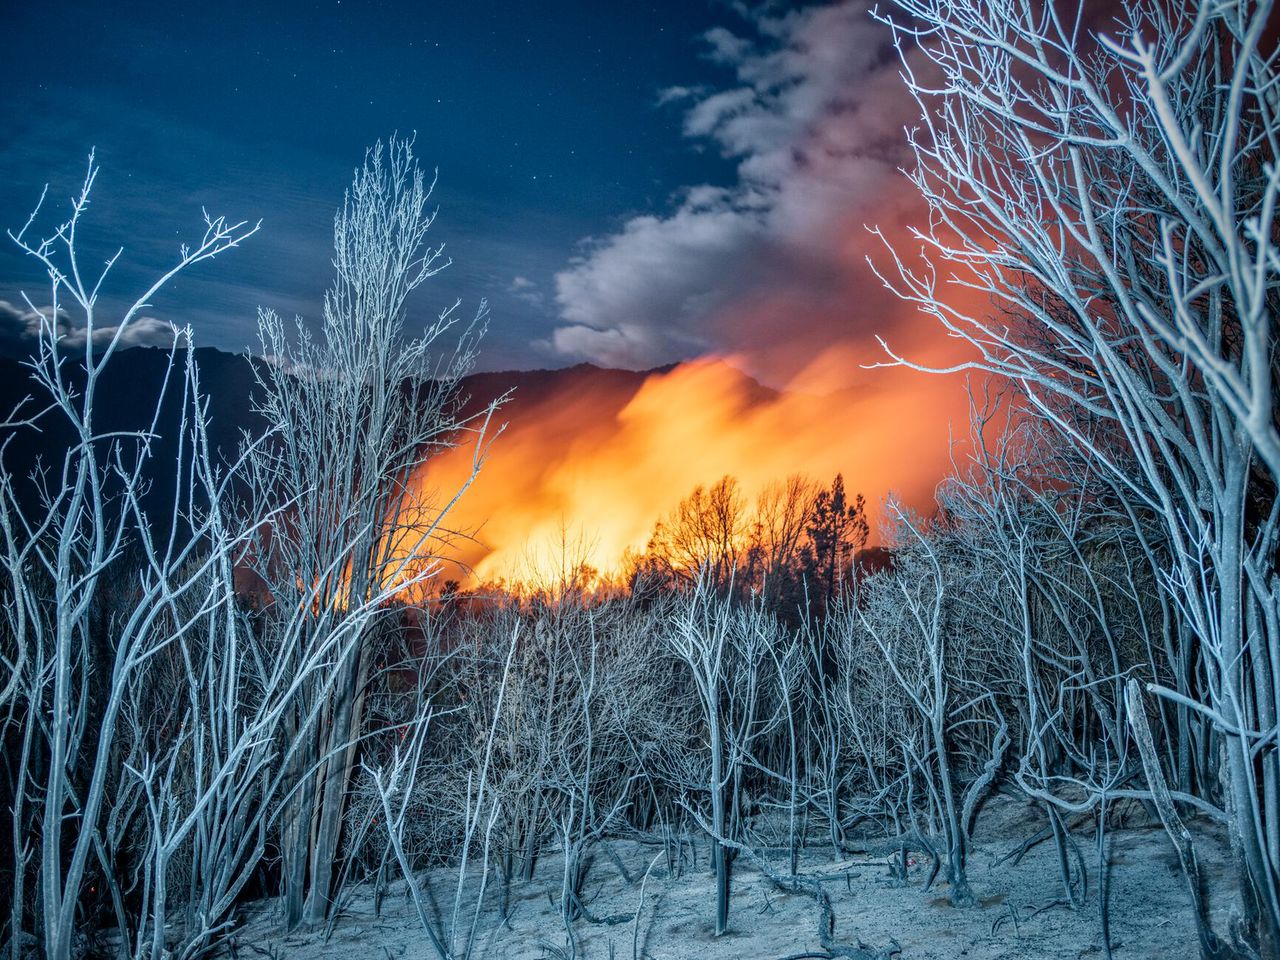 27.01.2021 r., El Bolson, Argentyna. W tle widać szalejący pożar. Na przodzie zaś znajdują się drzewa charakterystyczne dla tego regionu, pokryte popiołem.